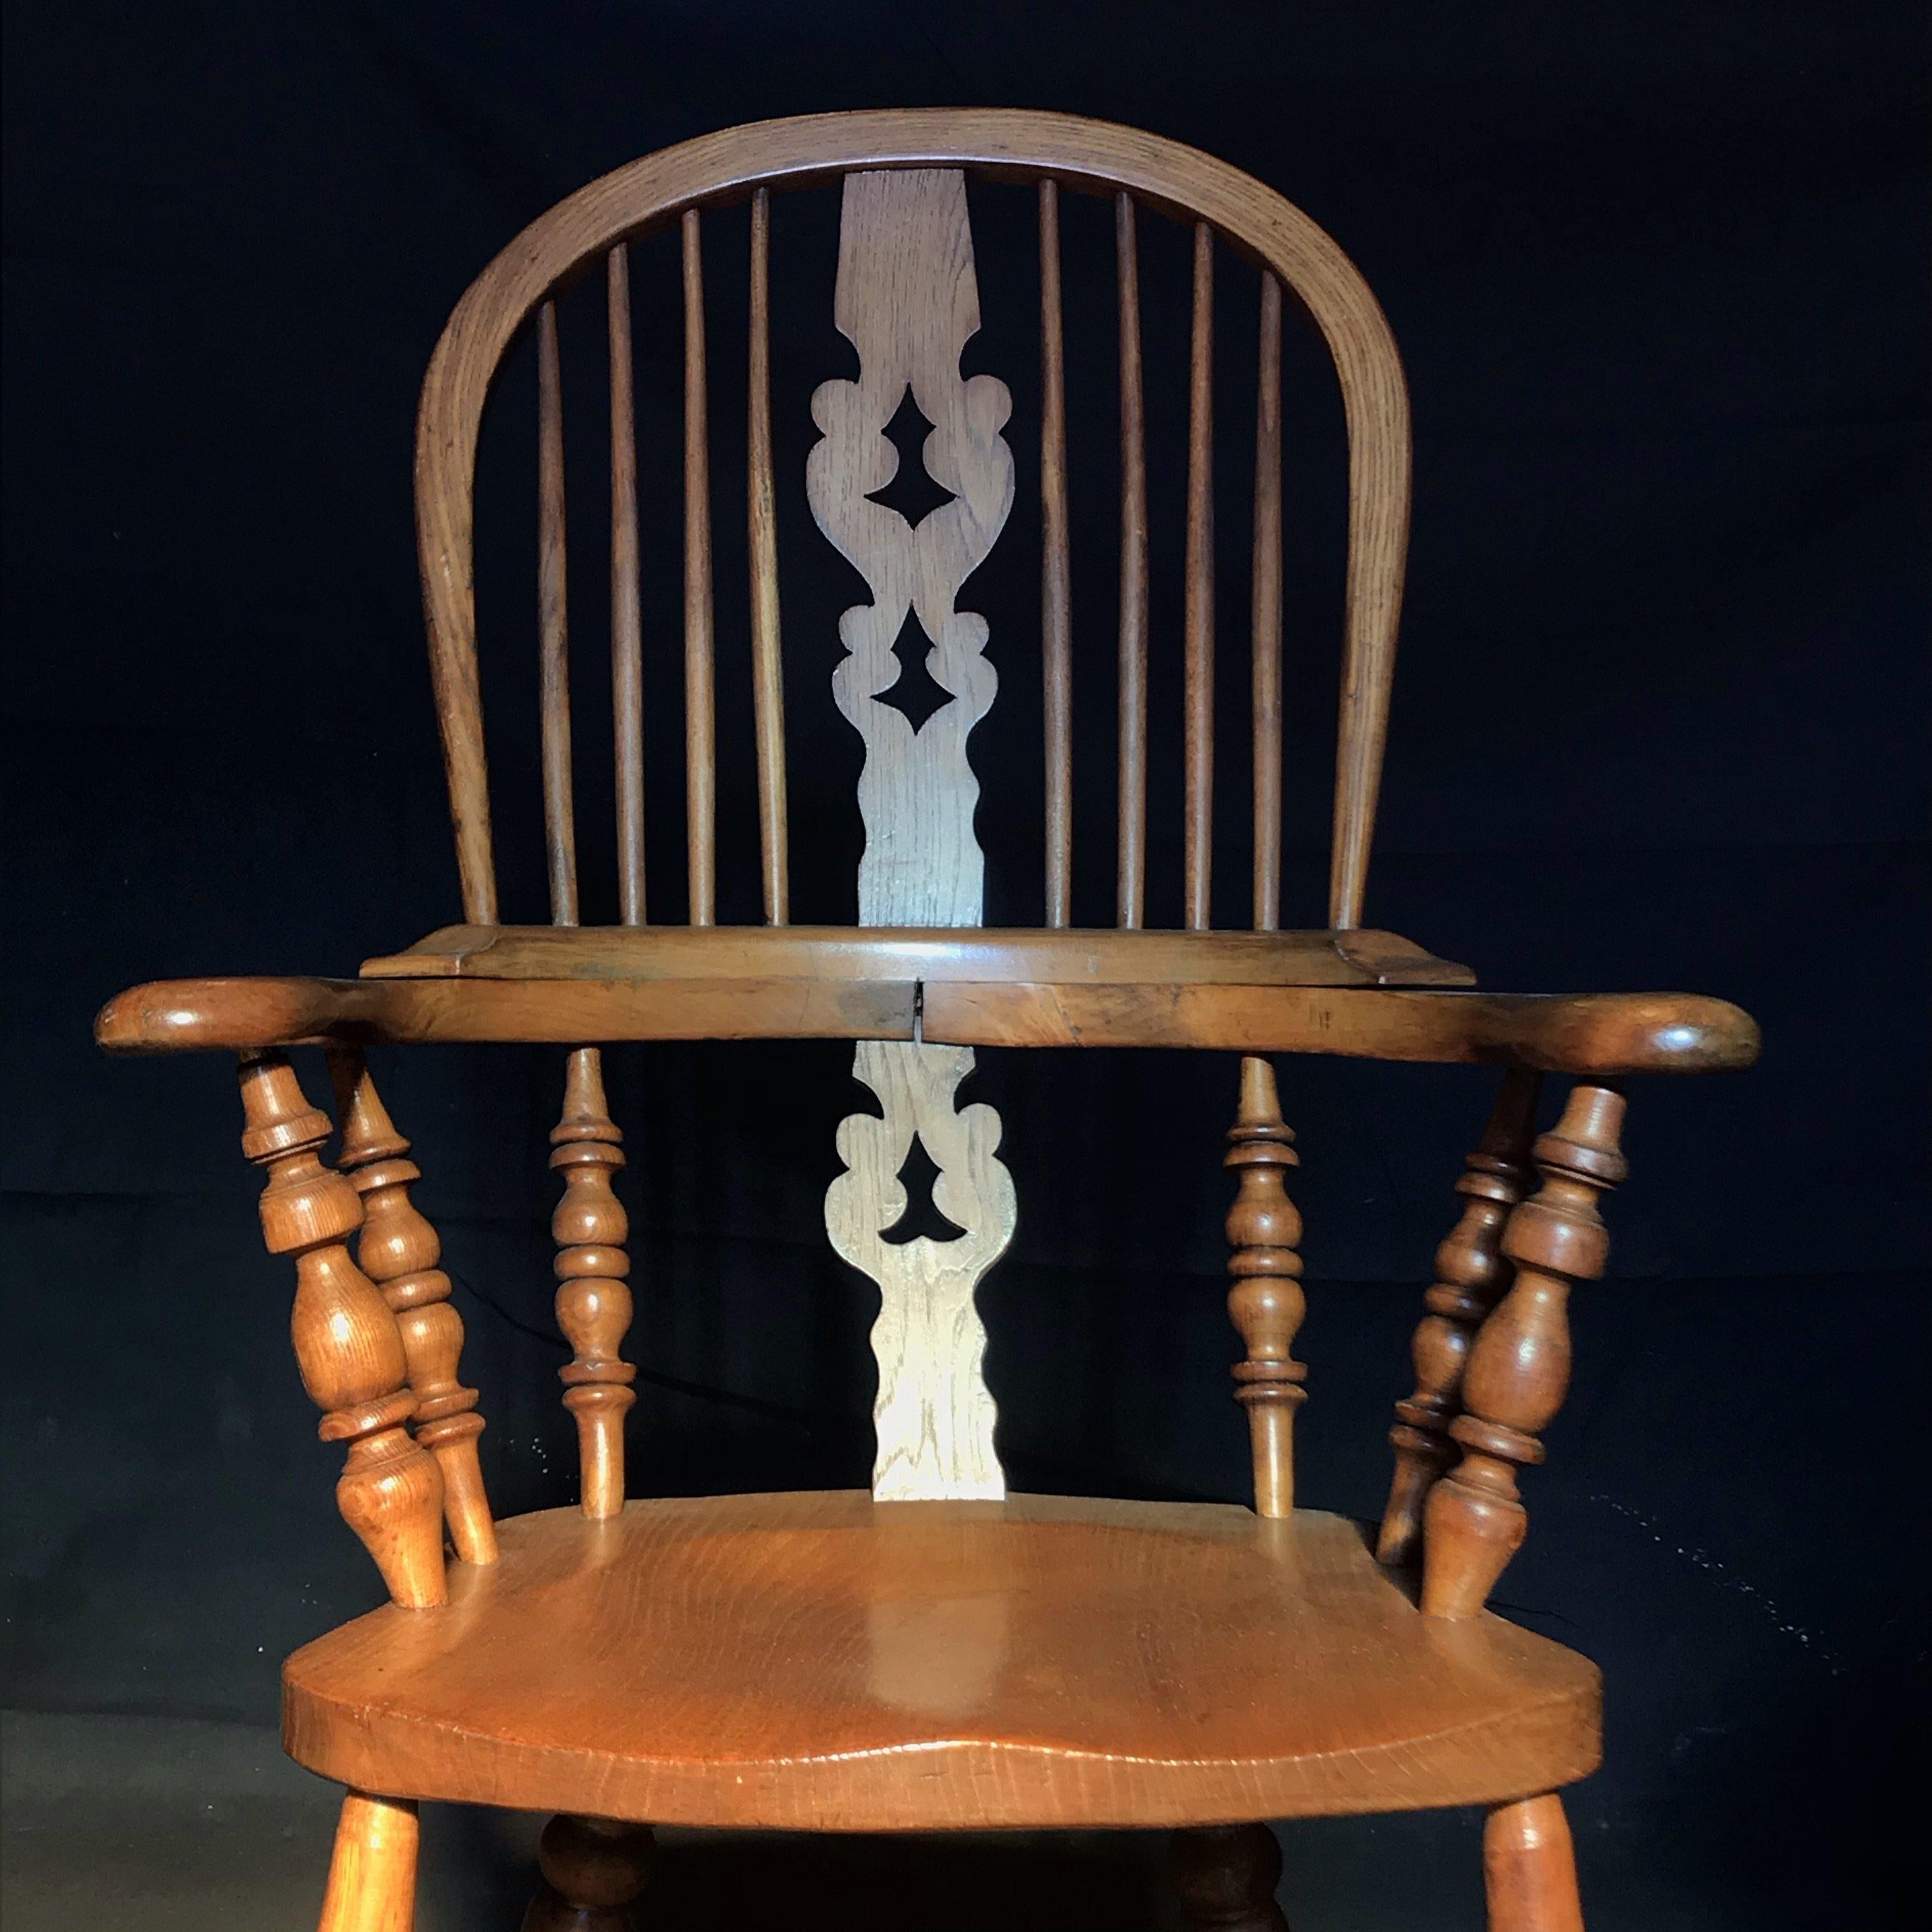 Fauteuil Windsor en noyer du début du 20e siècle, avec pieds et brancards tournés, bien figuré et très confortable. La chaise Windsor est considérée comme l'un des grands classiques du mobilier de campagne anglais. Fabriqué par des artisans de